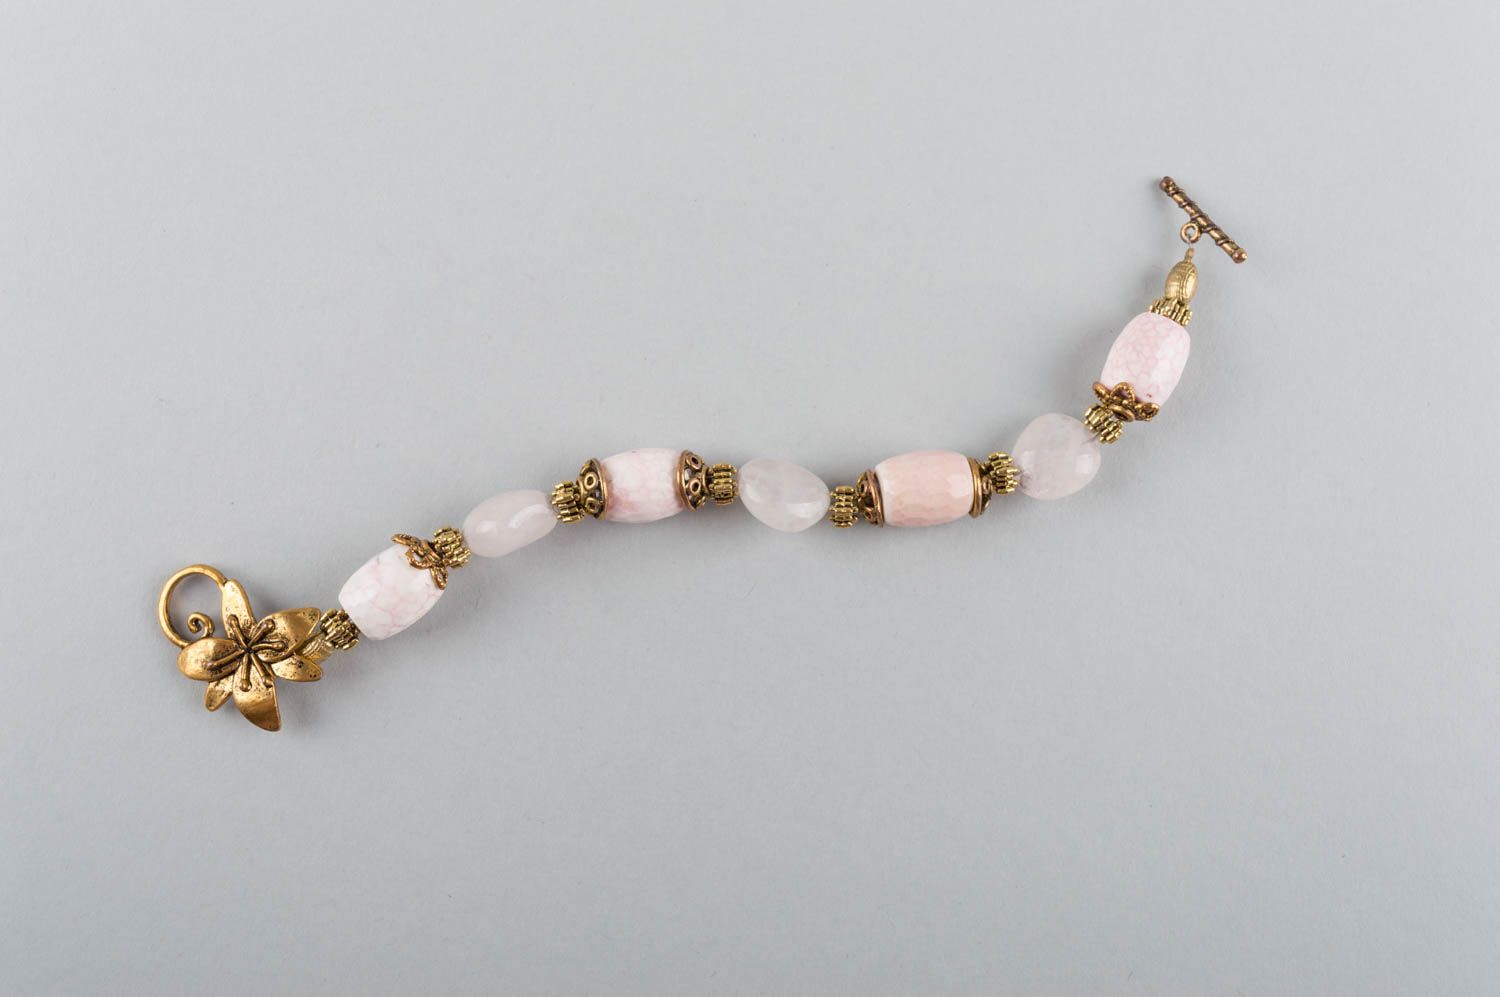 Красивый элегантный женский браслет из латуни и натуральных камней ручной работы фото 2